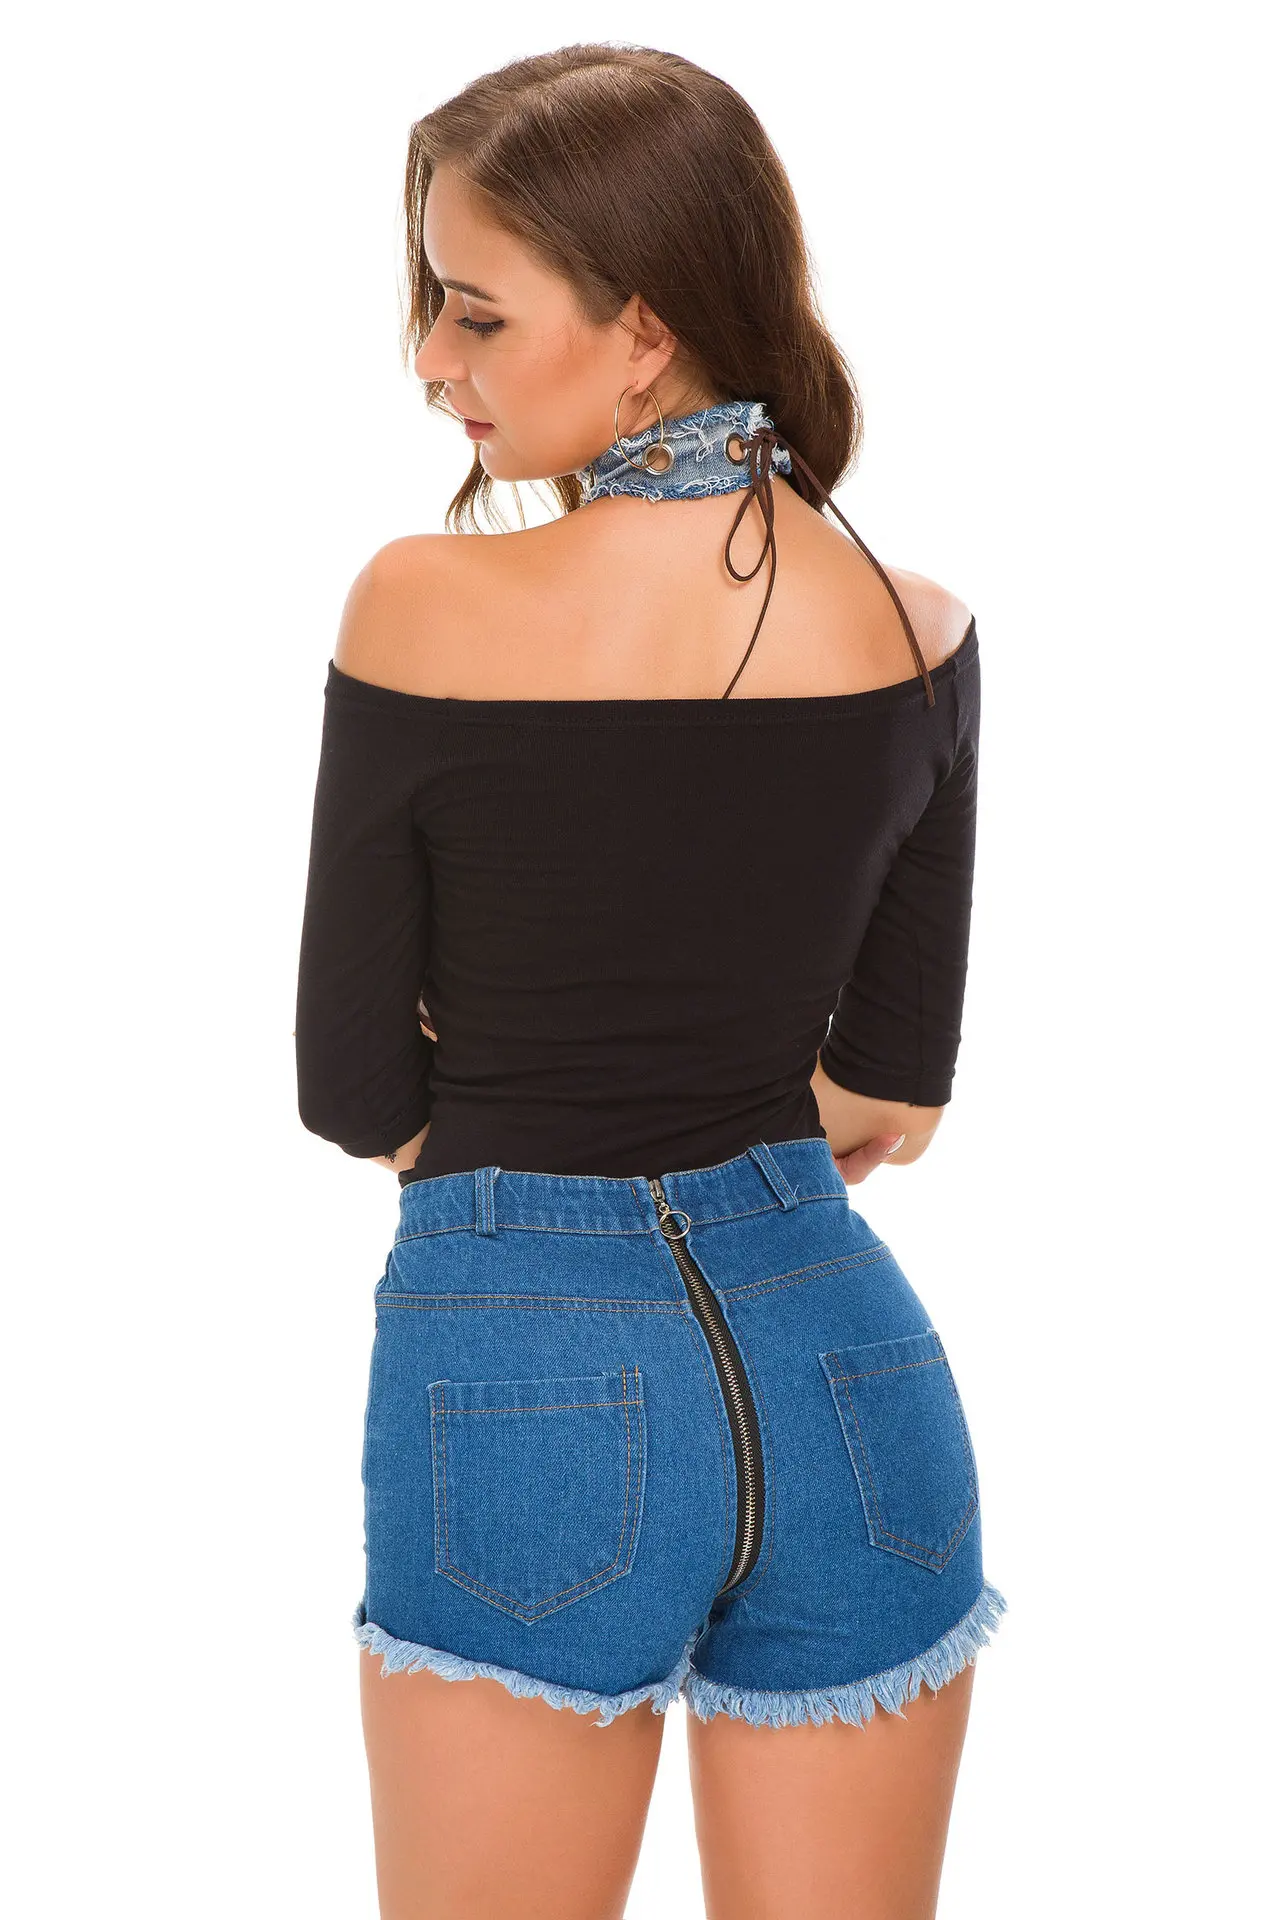 1 шт. с высокой талией сексуальные женские джинсы джинсовые шорты 2019 летние модные джинсовые рваные шорты женские узкие супер короткие